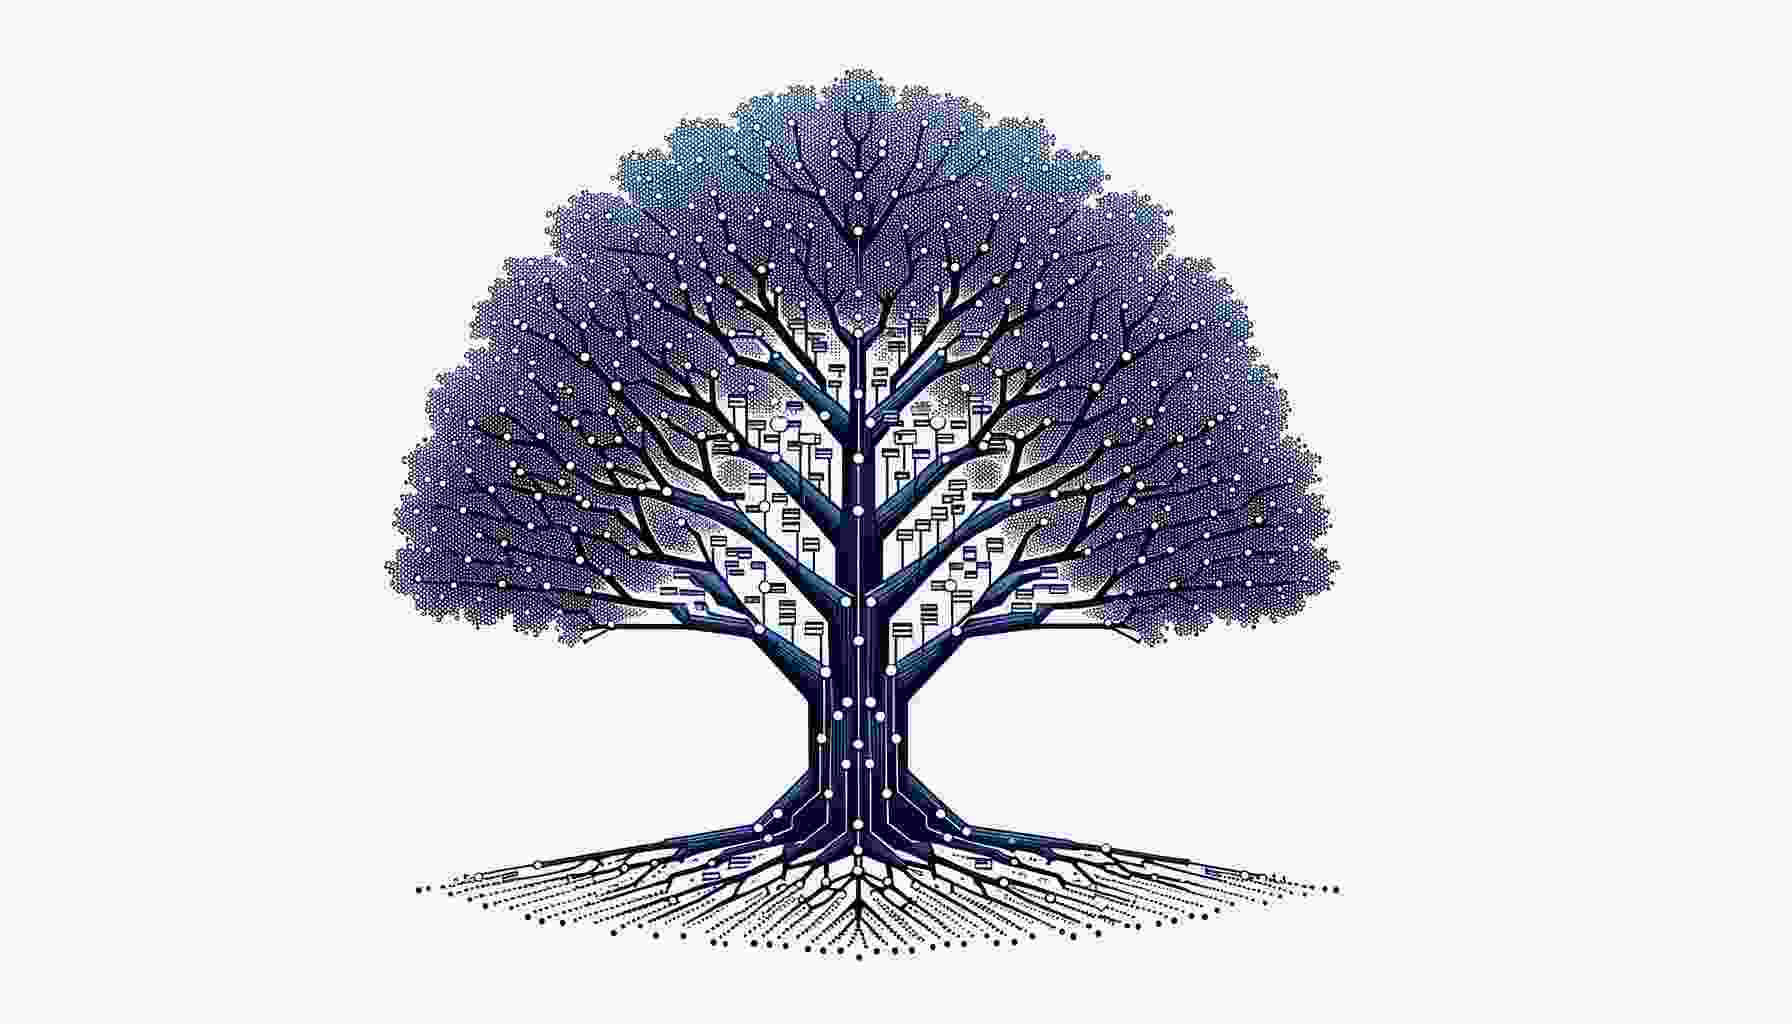  Decision-Tree-Learning-ai-splitting è un metodo di apprendimento automatico che utilizza un algoritmo di suddivisione per creare un albero di decisione. Questo albero viene utilizzato per prendere decisioni basate su una serie di regole e condizioni. Il processo di suddivisione coinvolge la divisione dei dati in gruppi più piccoli in base a determinate caratteristiche, al fine di creare una str 